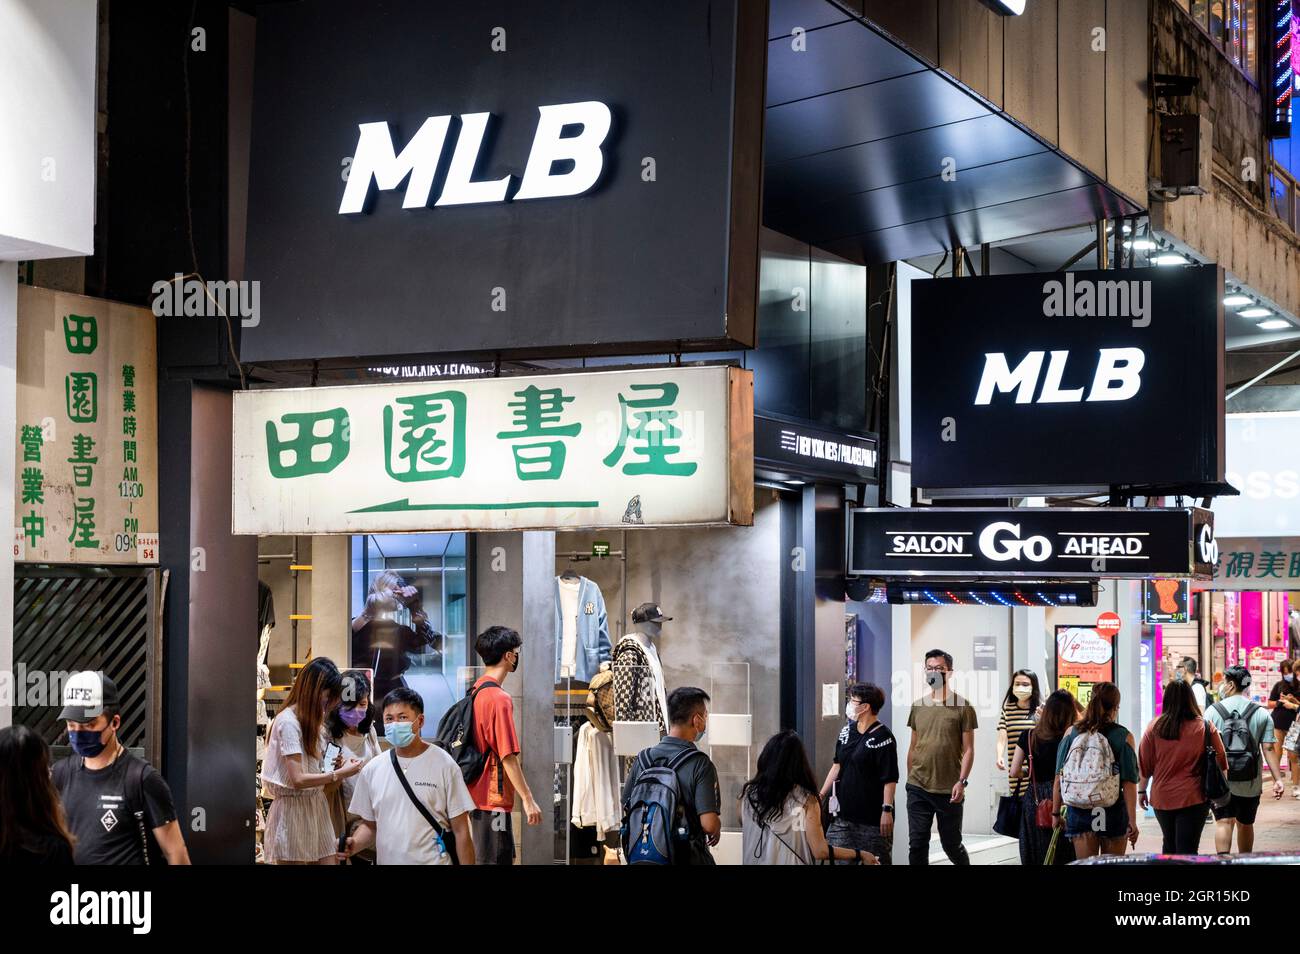 Hong Kong, China. 23rd Sep, 2021. Pedestrians walk past the American  professional baseball organization, Major League Baseball (MLB), official merchandise  store in Hong Kong. (Credit Image: © Budrul Chukrut/SOPA Images via ZUMA